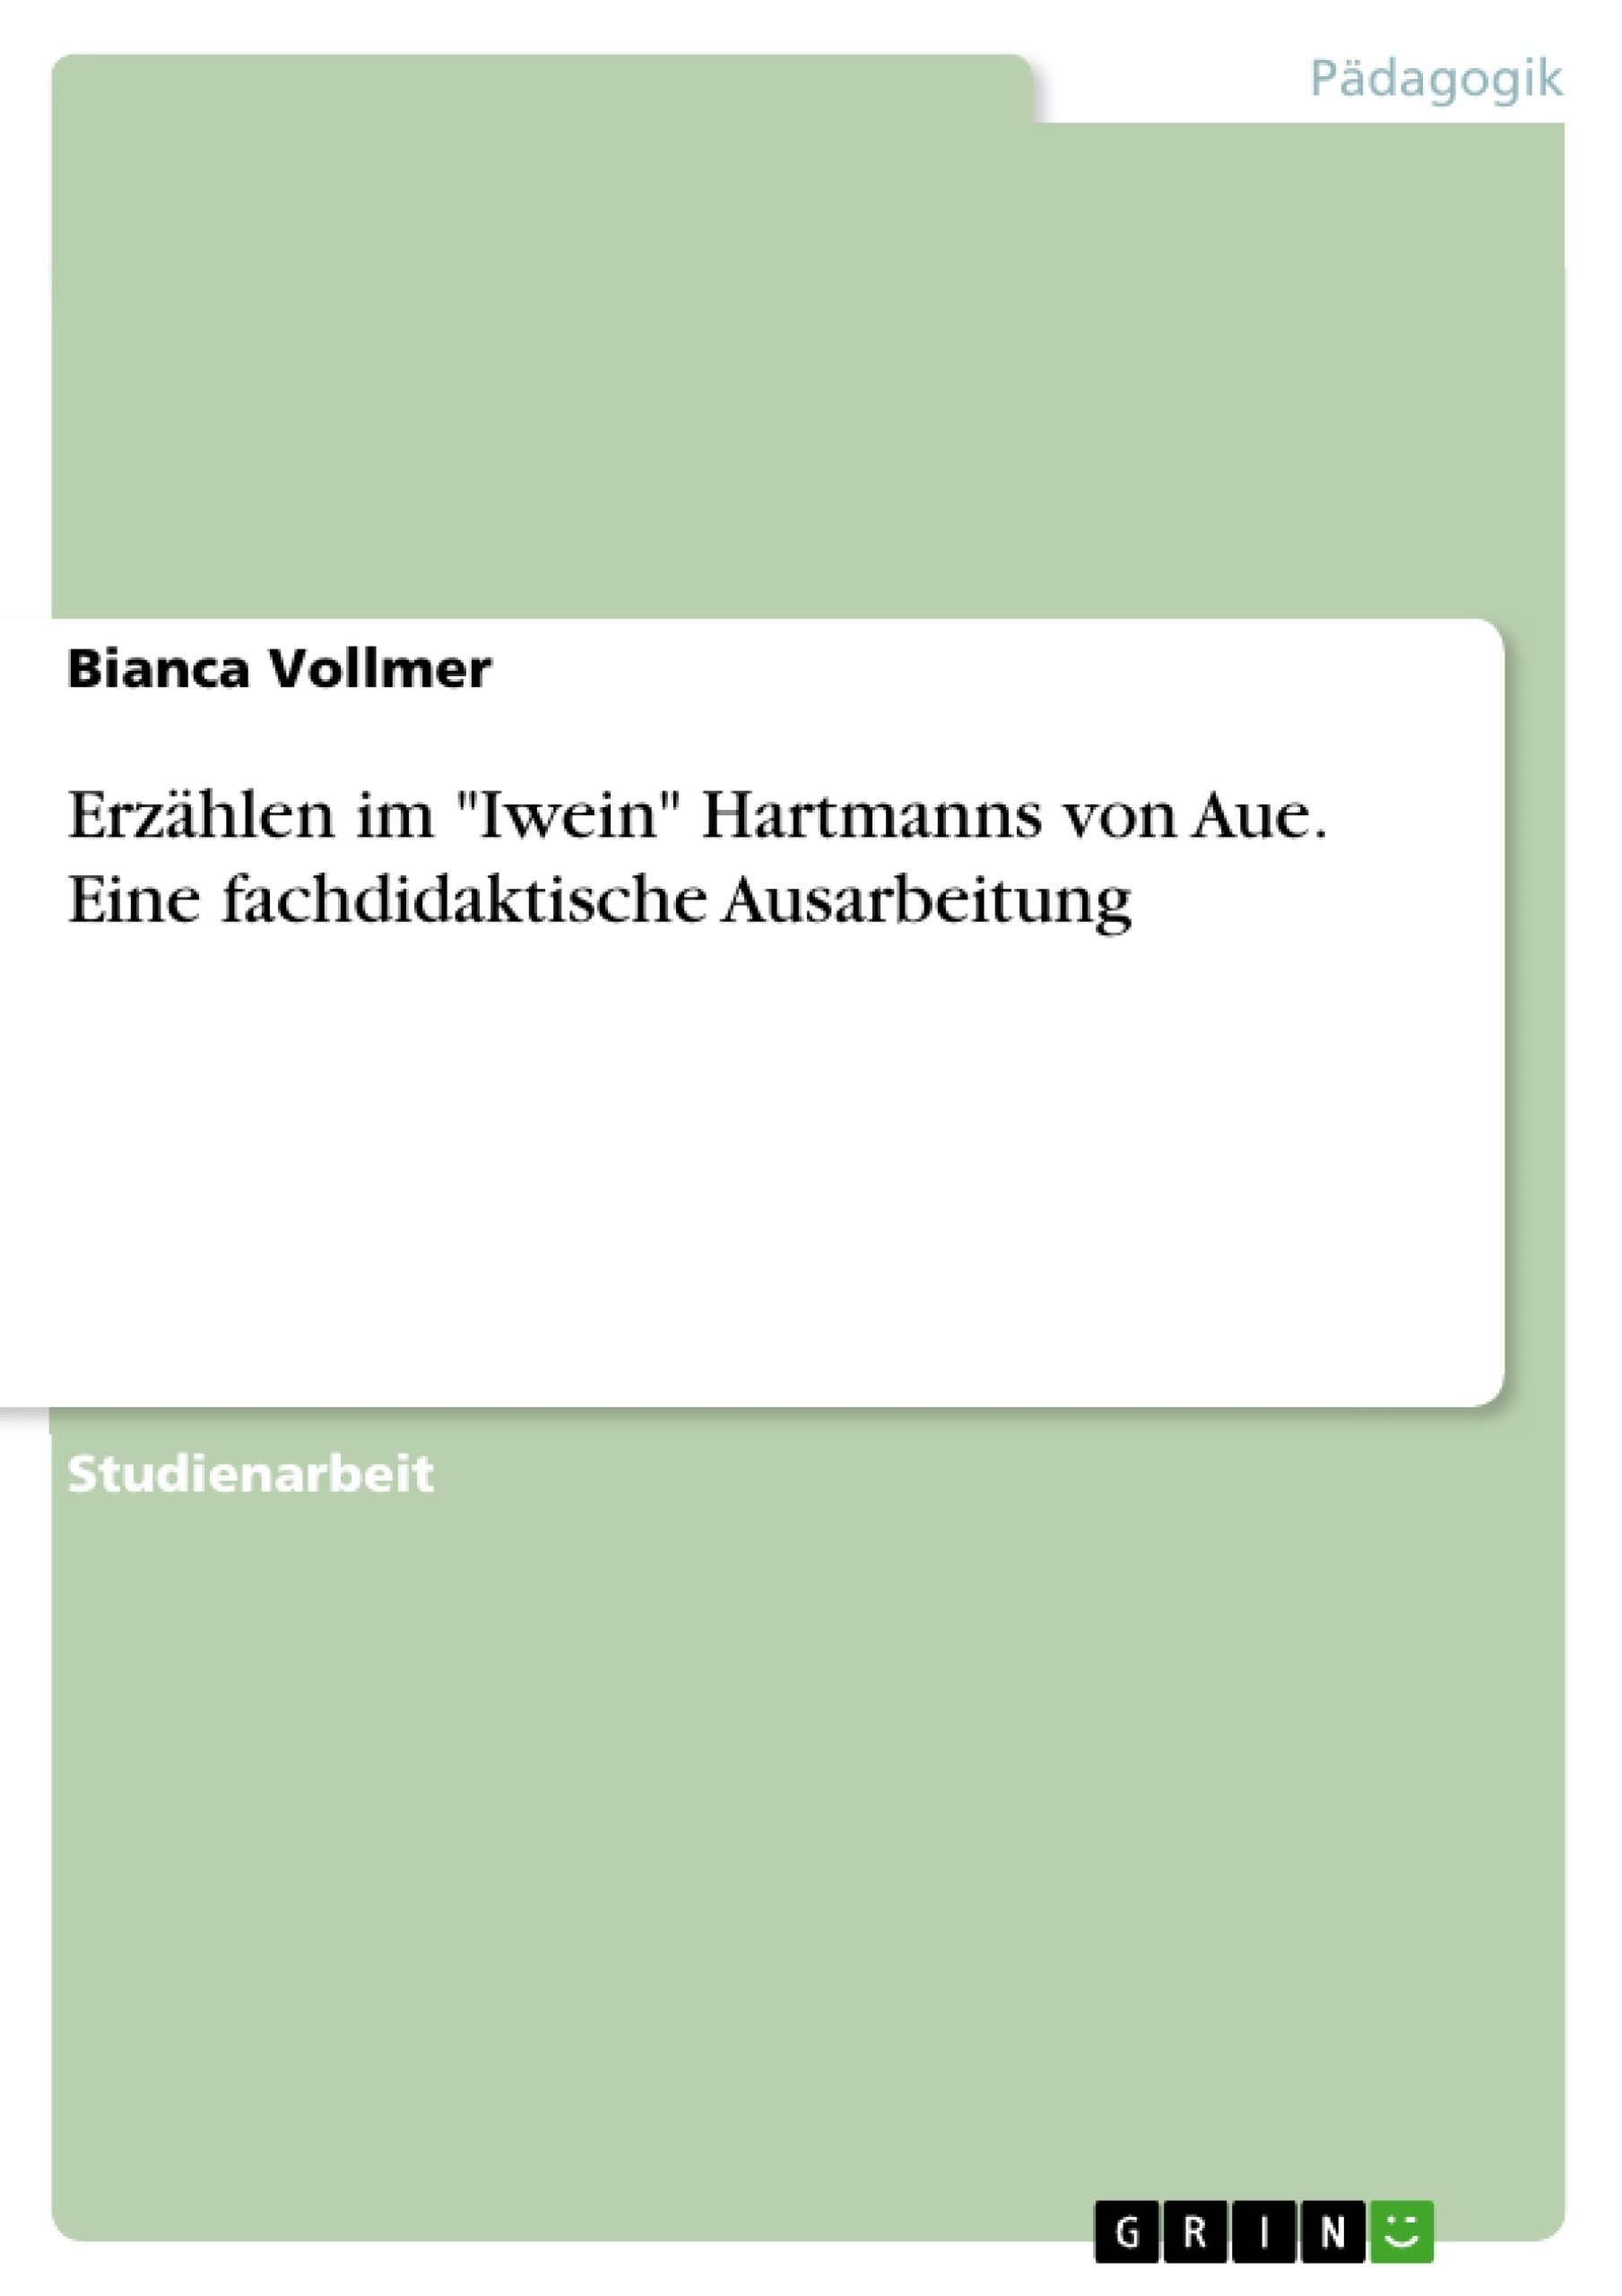 Title: Erzählen im "Iwein" Hartmanns von Aue. Eine fachdidaktische Ausarbeitung